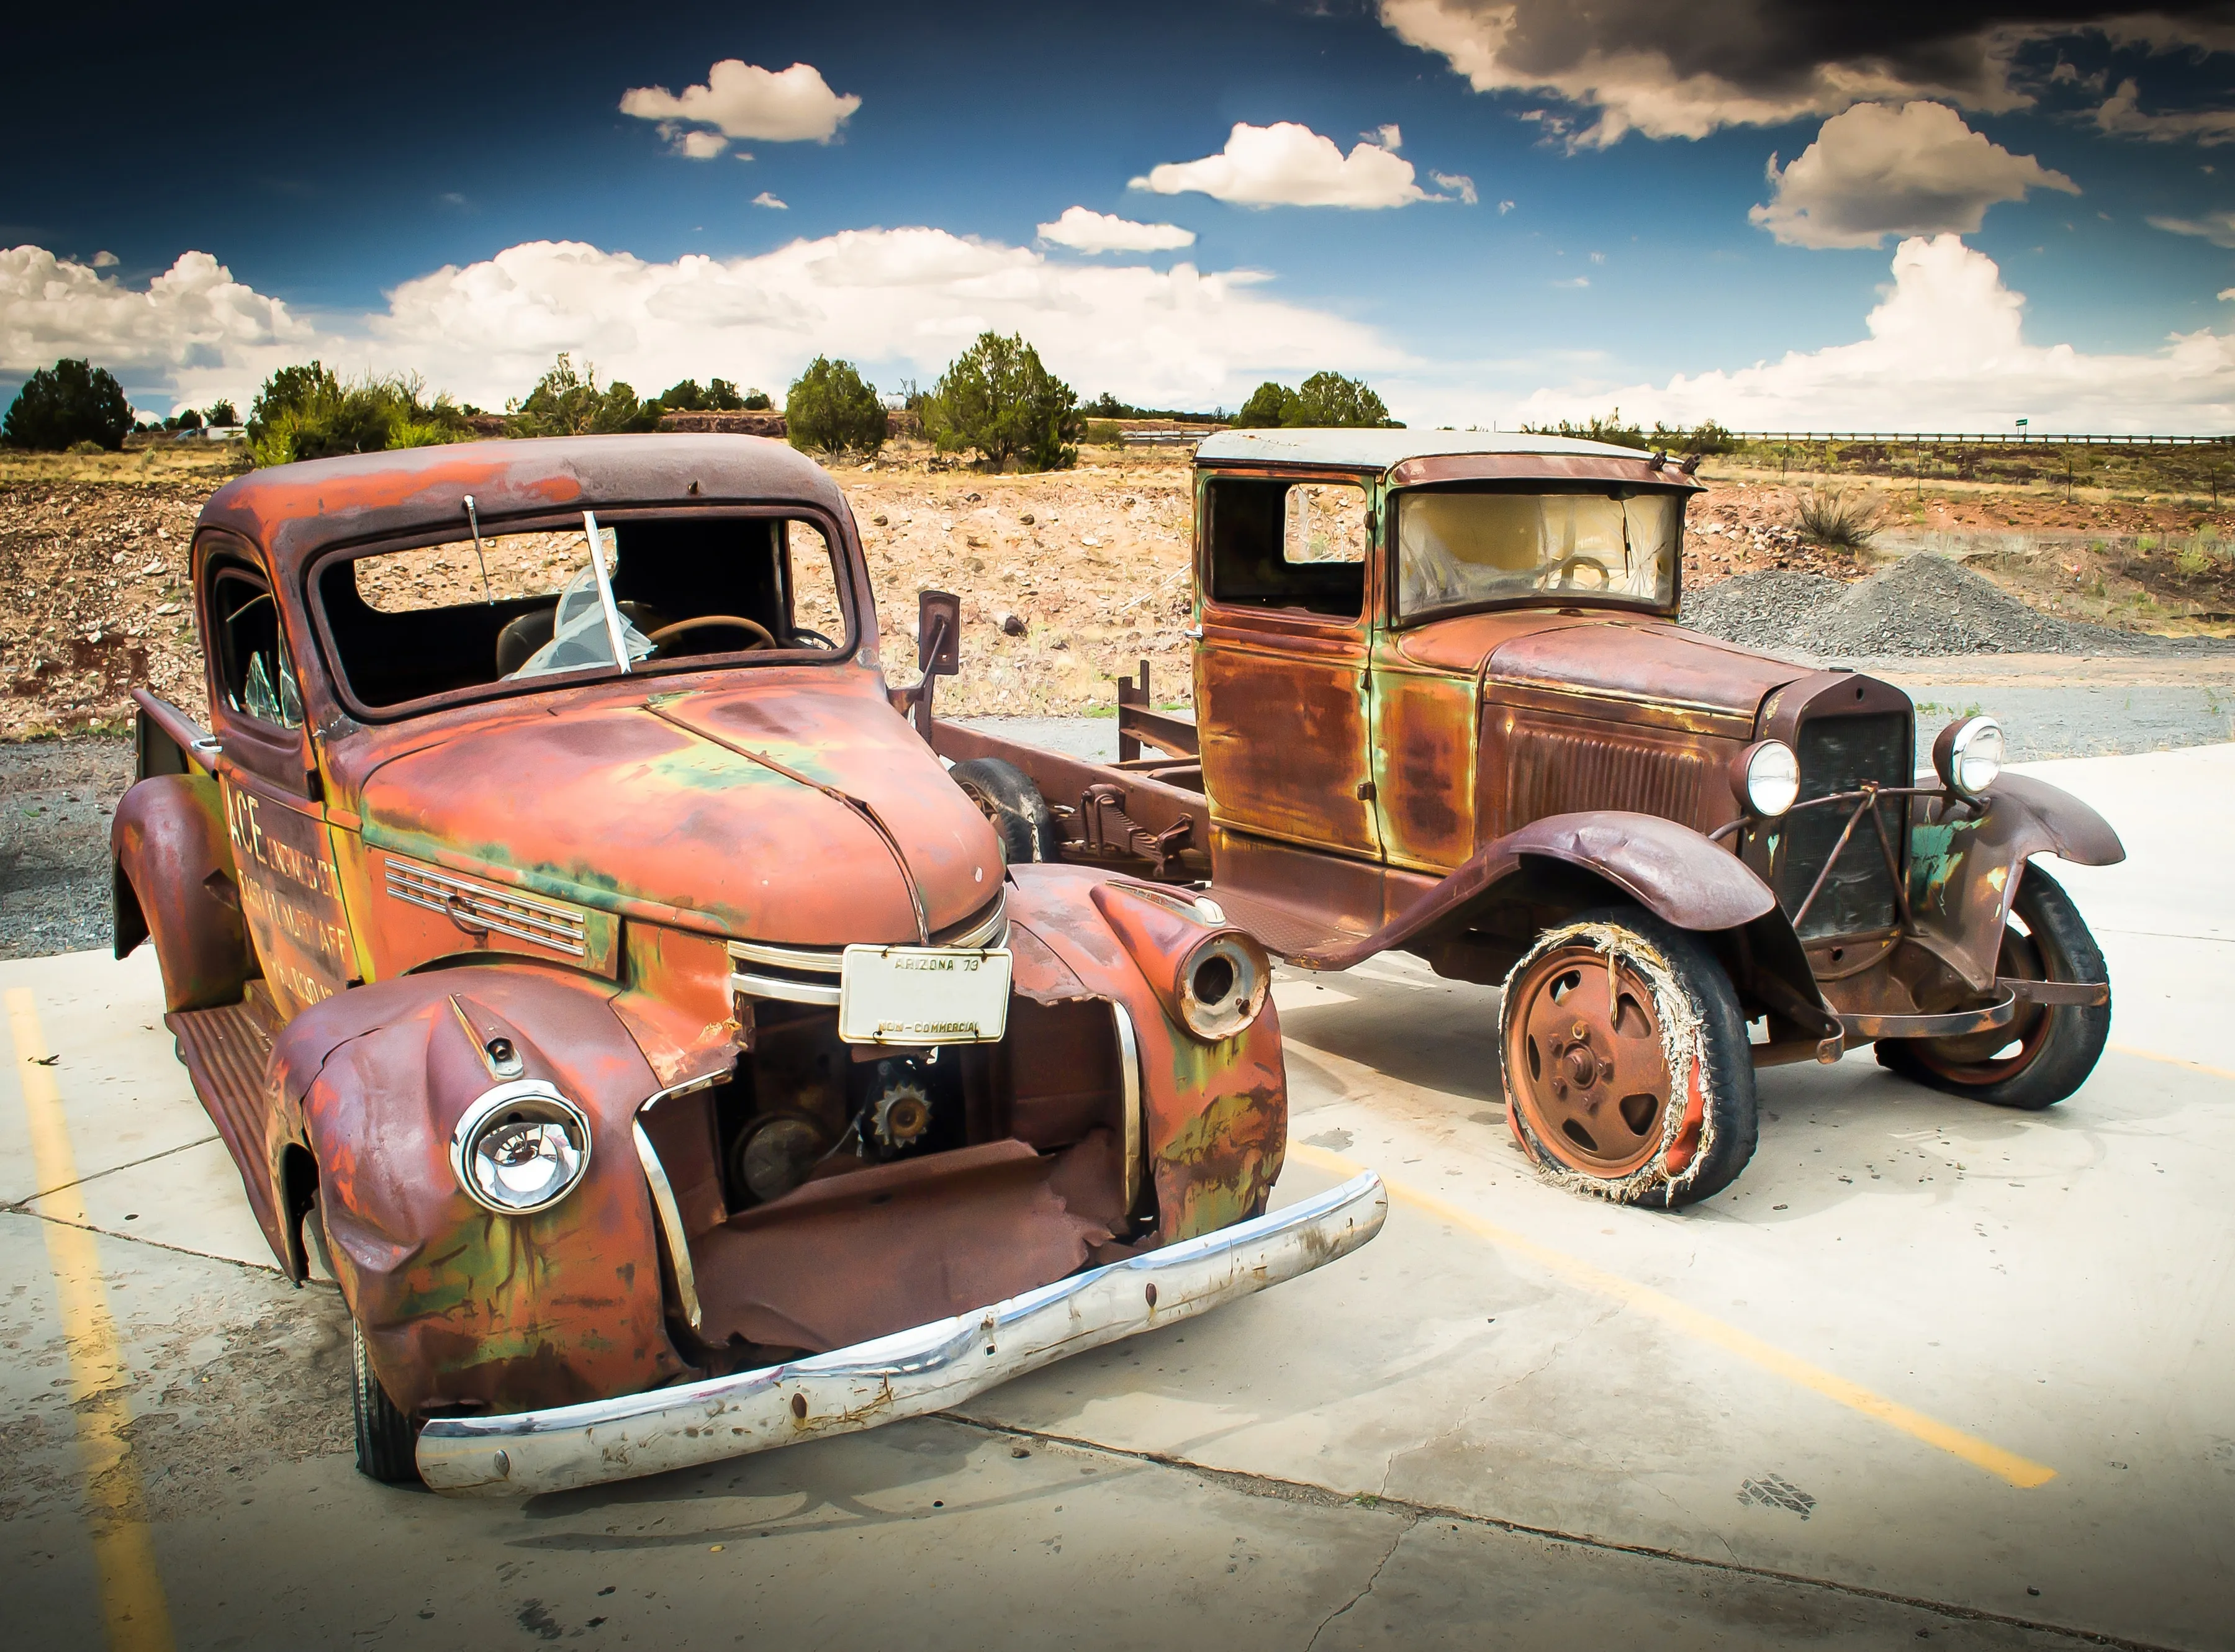 PAPERMOON Fototapete "Abandoned Old Cars" Tapeten Gr. B/L: 3,5 m x 2,6 m, Bahnen: 7 St., bunt (mehrfarbig) Fototapeten